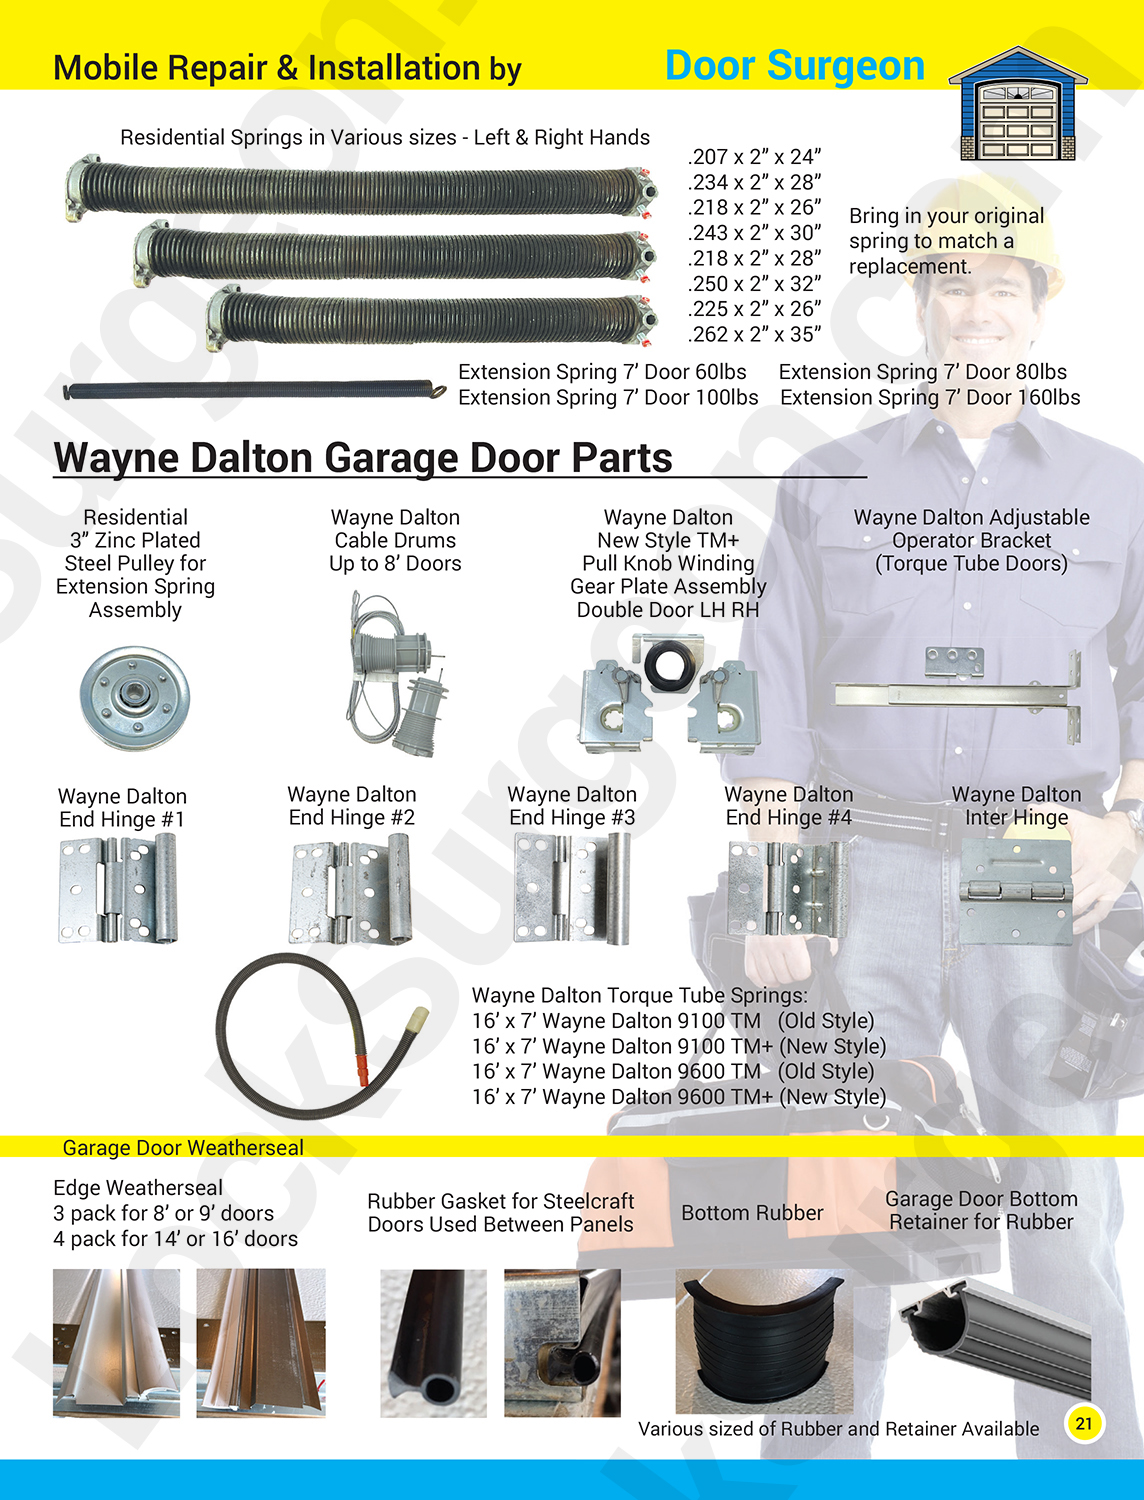 Garage door part solutions for home. Garage door repairs, replacement parts and new garage doors.